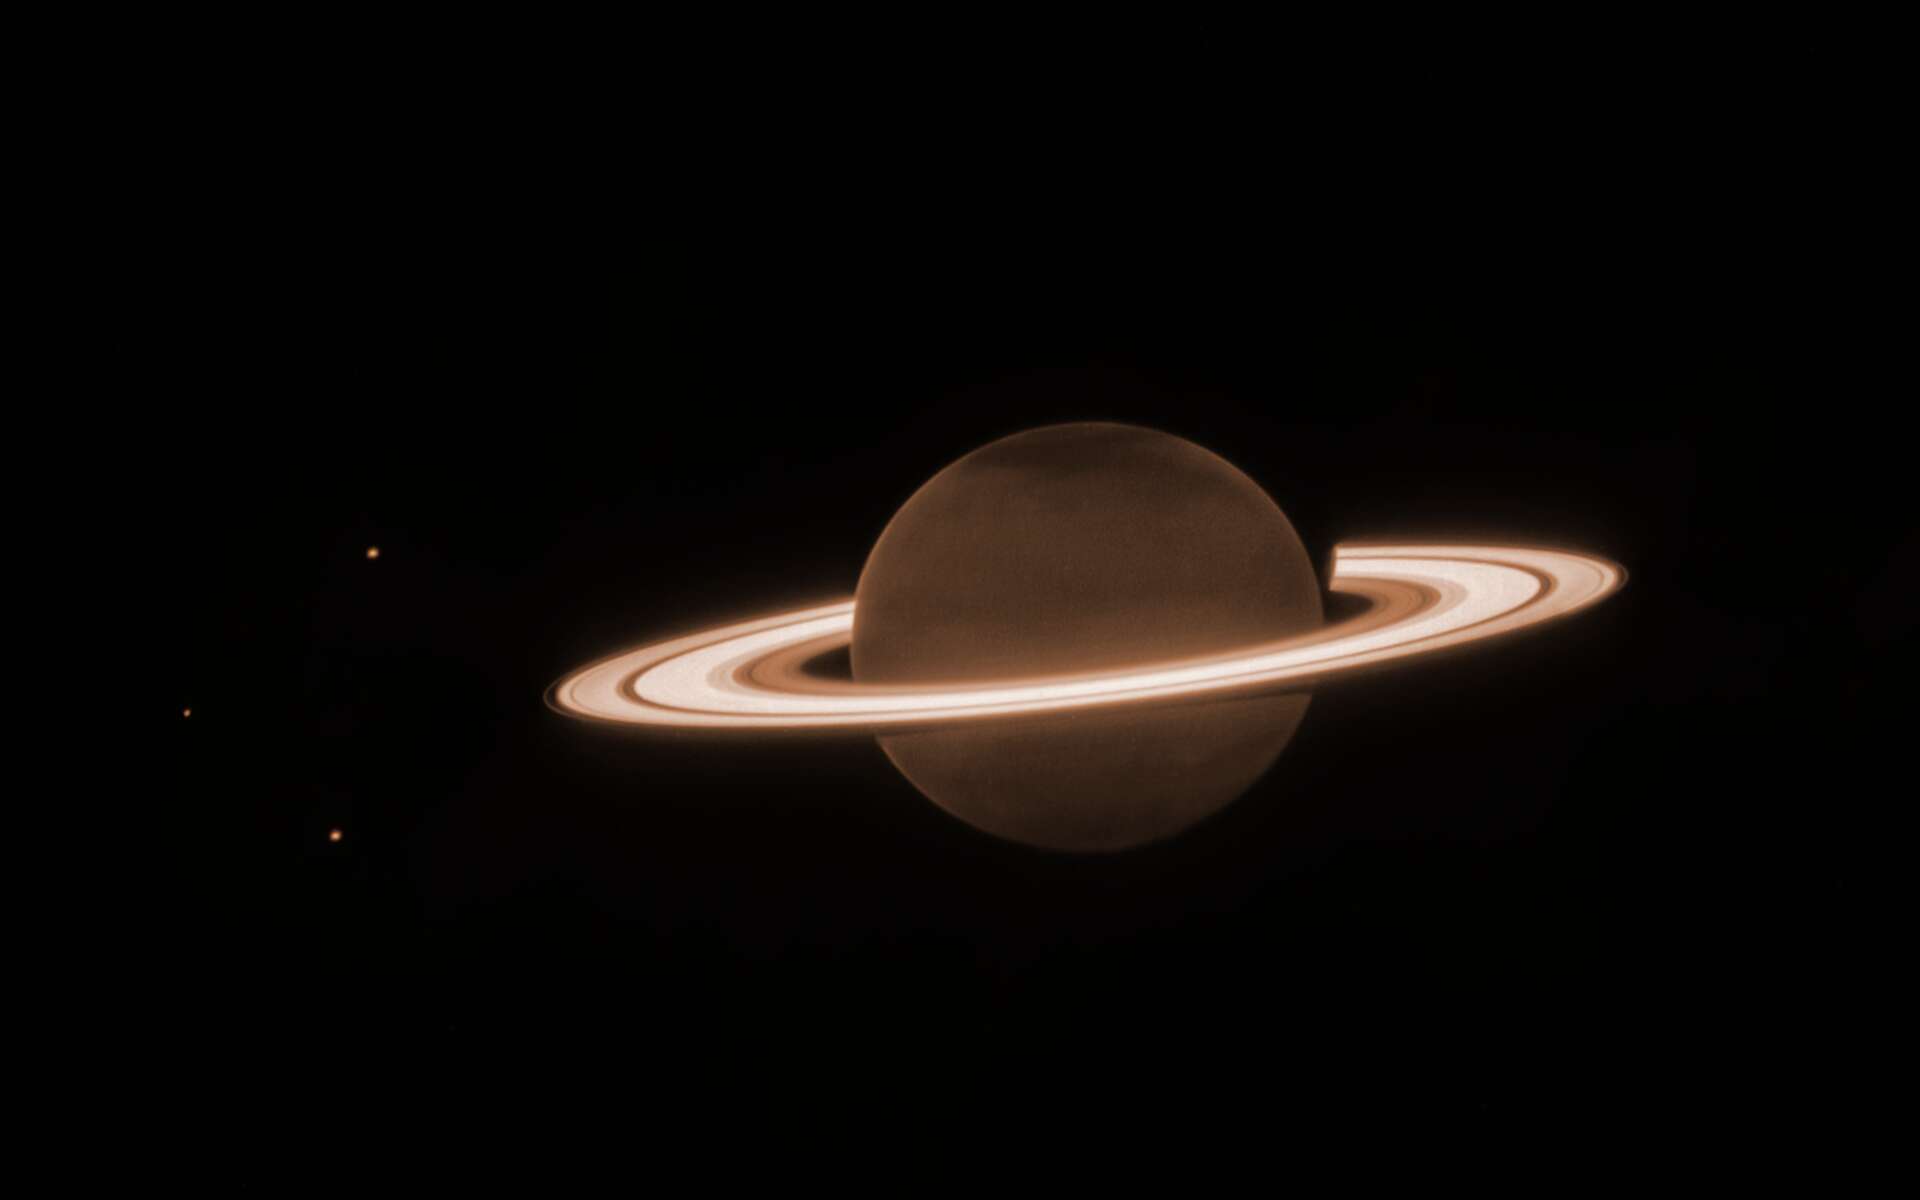 Le télescope James-Webb révèle une fascinante image de Saturne avec des détails inattendus !